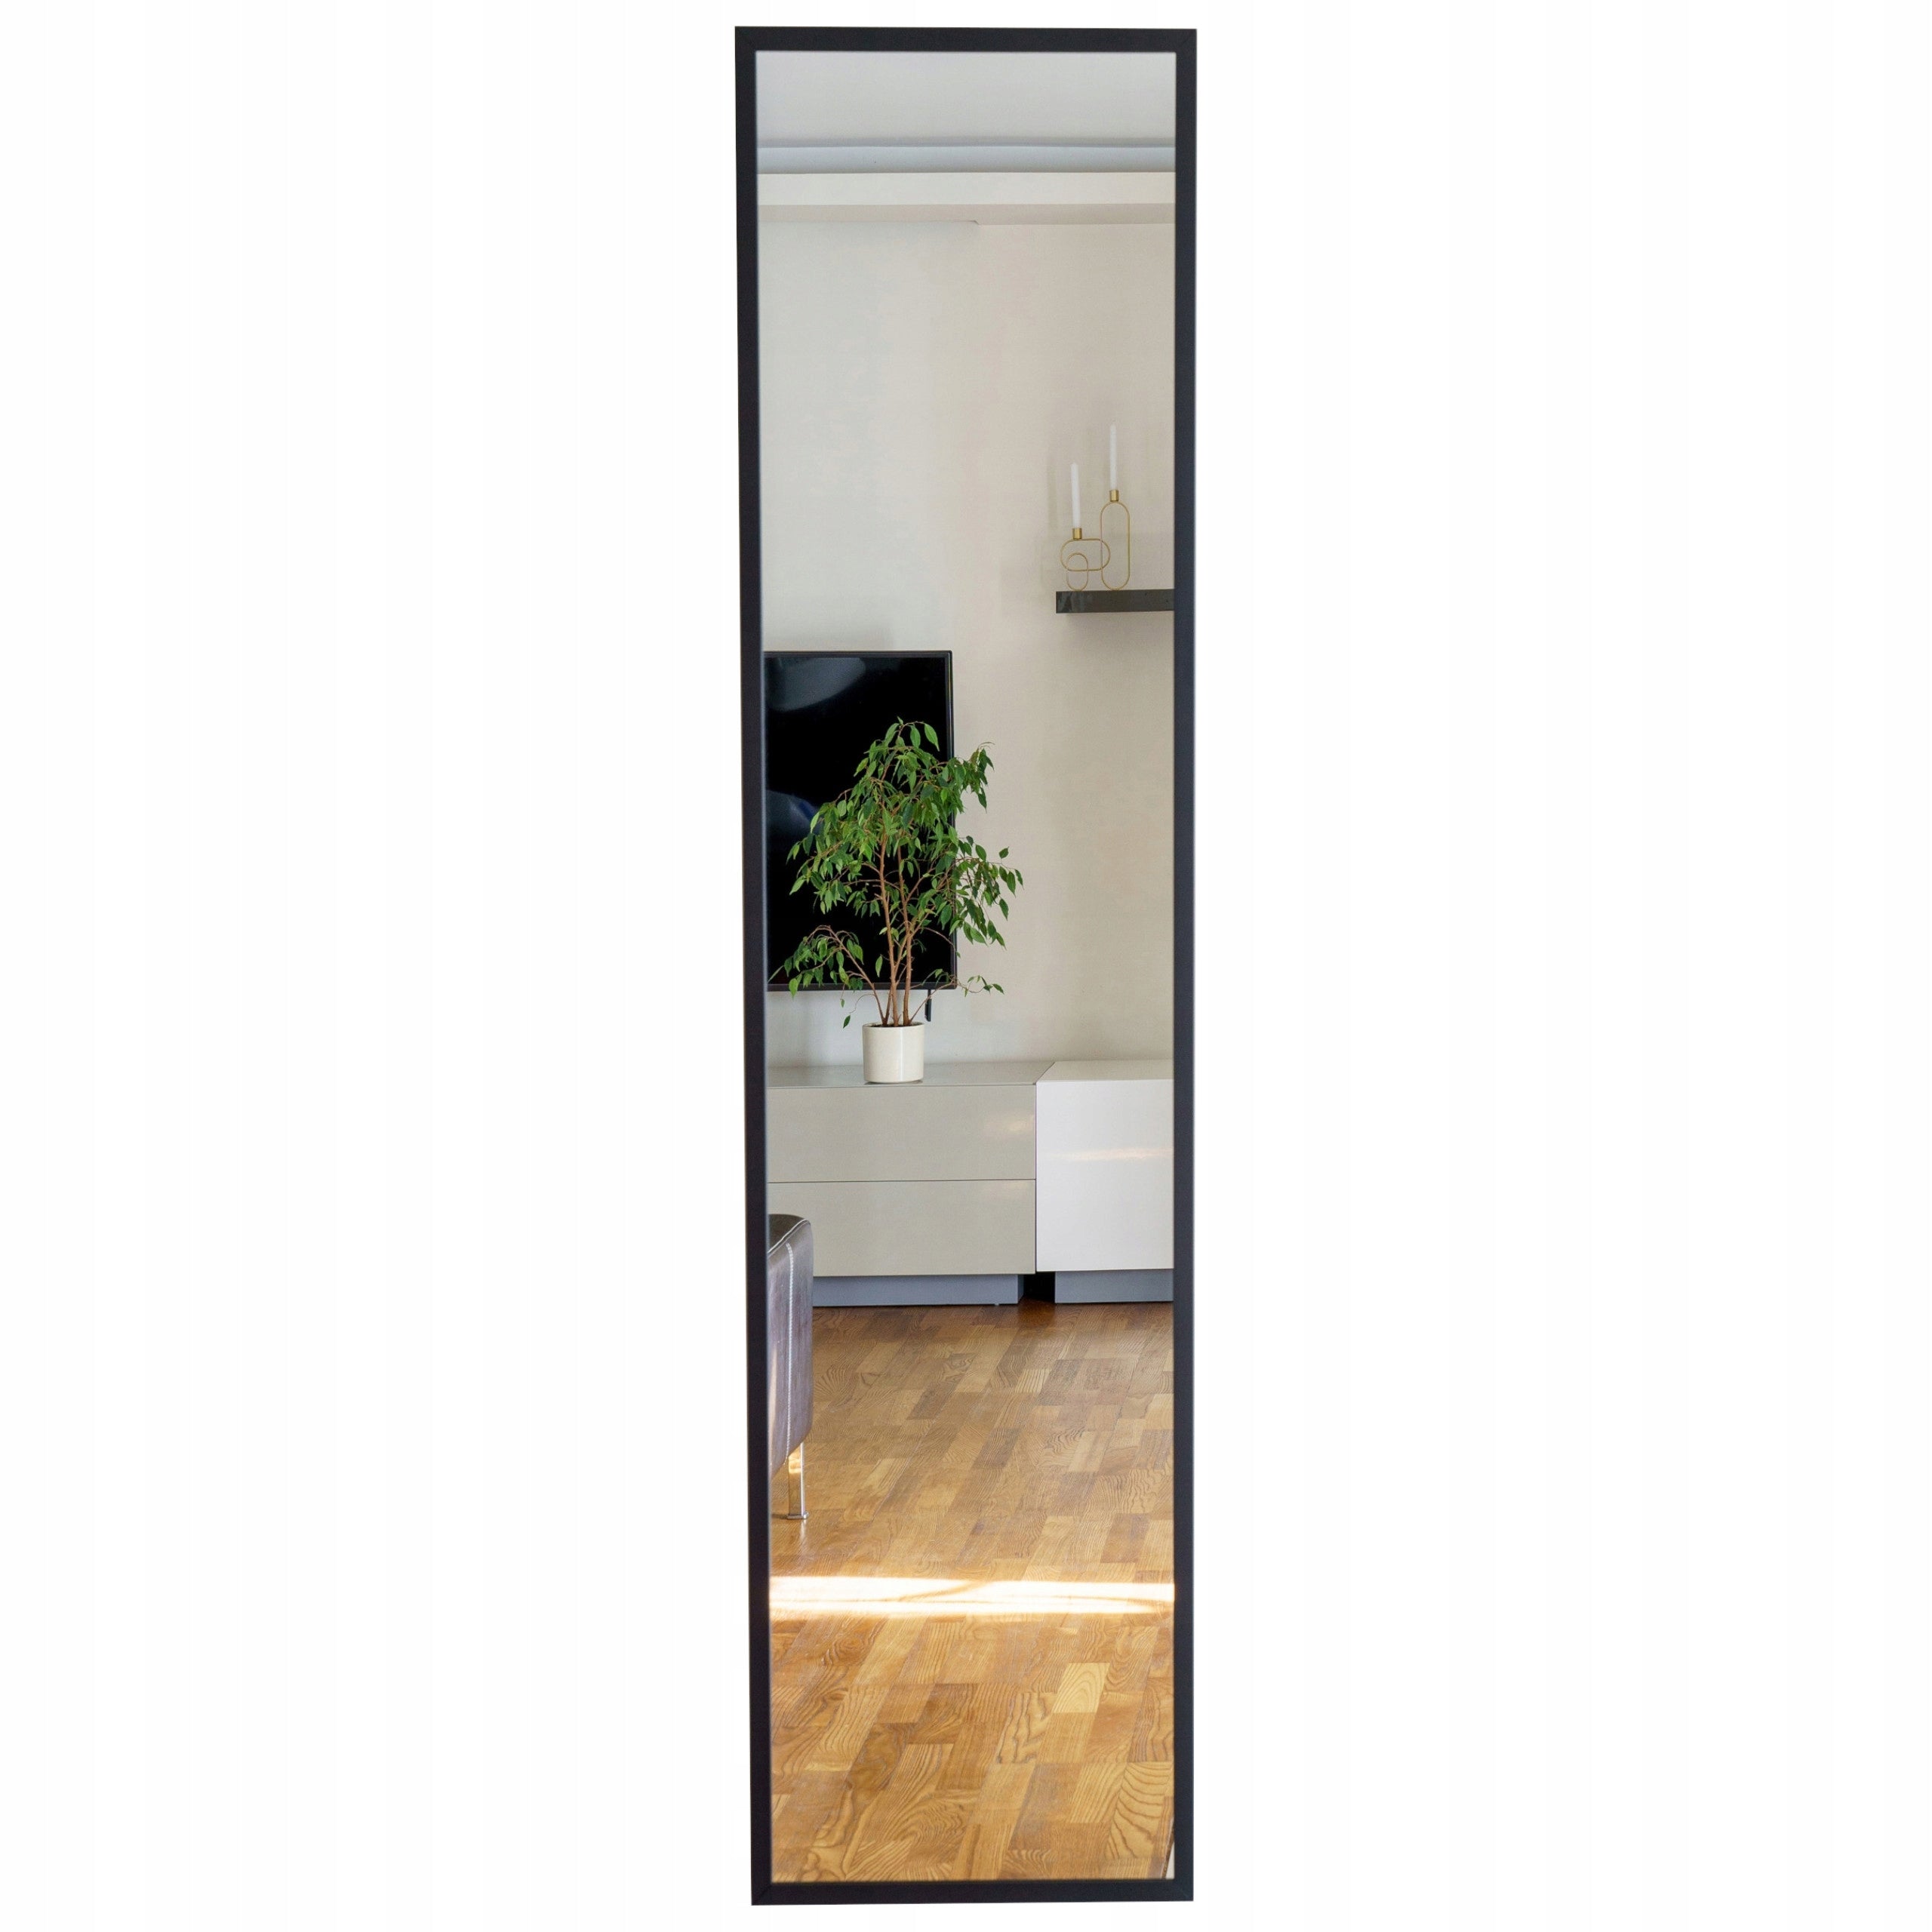 Speil i svart ramme, rektangulært, til gangen